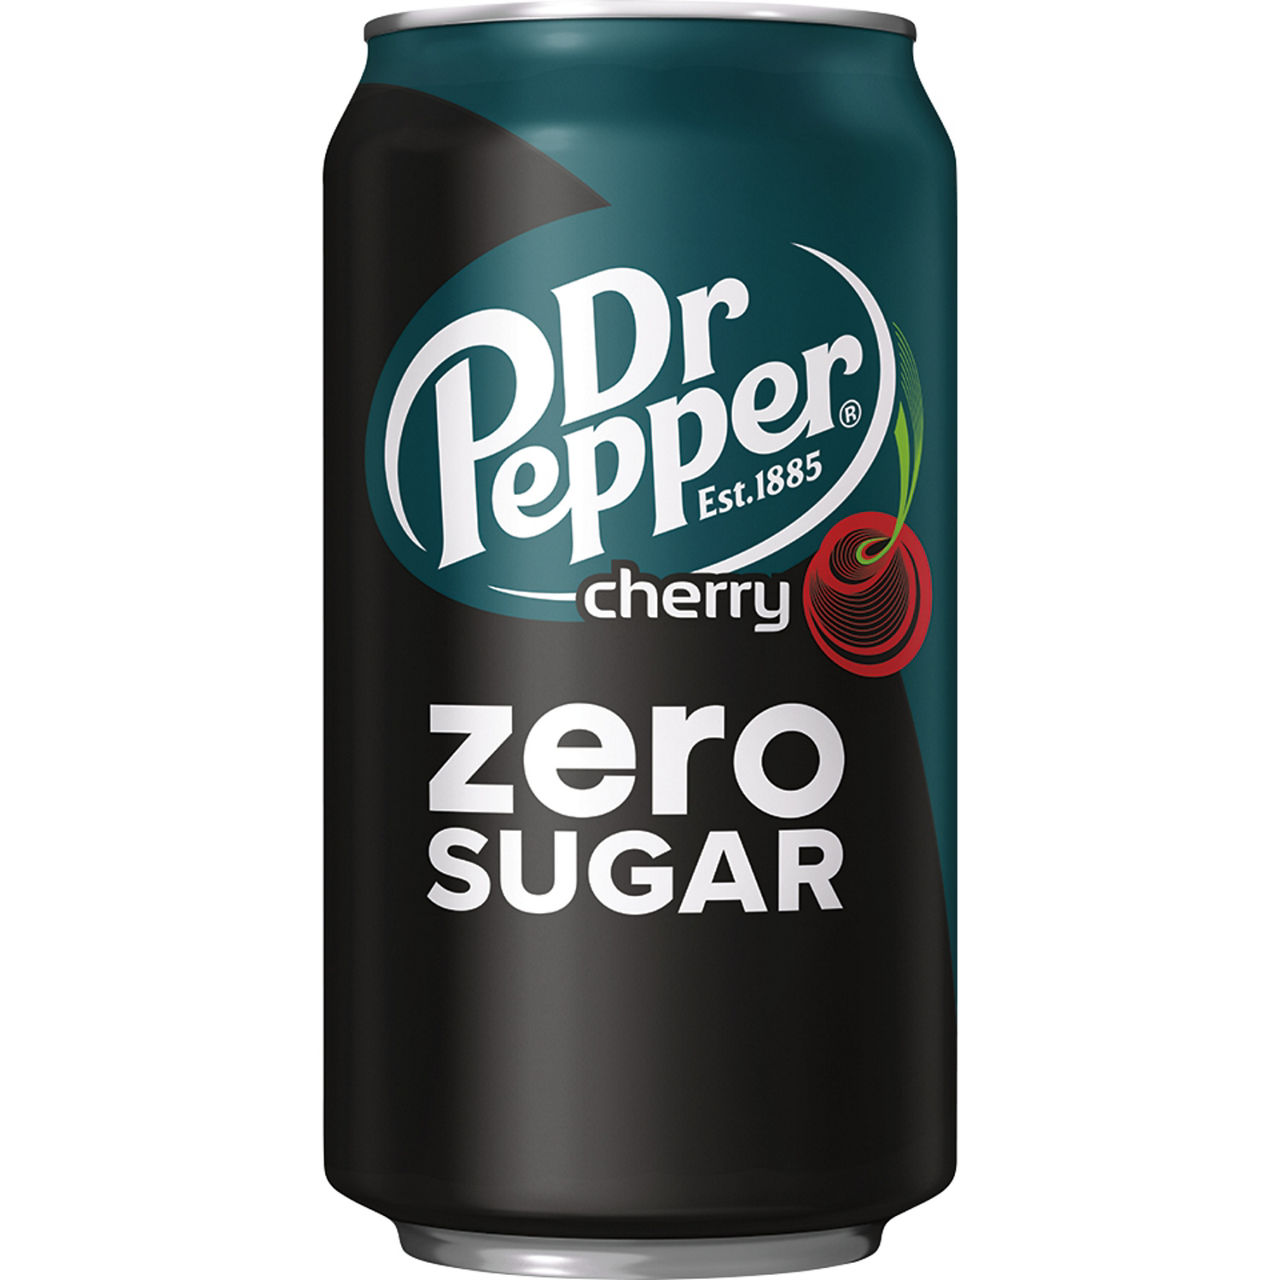 Pepper 0. Доктор Пеппер Cherry. Доктор Пеппер Зеро Шугар. Газированный напиток Dr.Pepper Classic 0.355ml. (Америка). Dr. Pepper напиток ГАЗ. Cherry 0,355л.